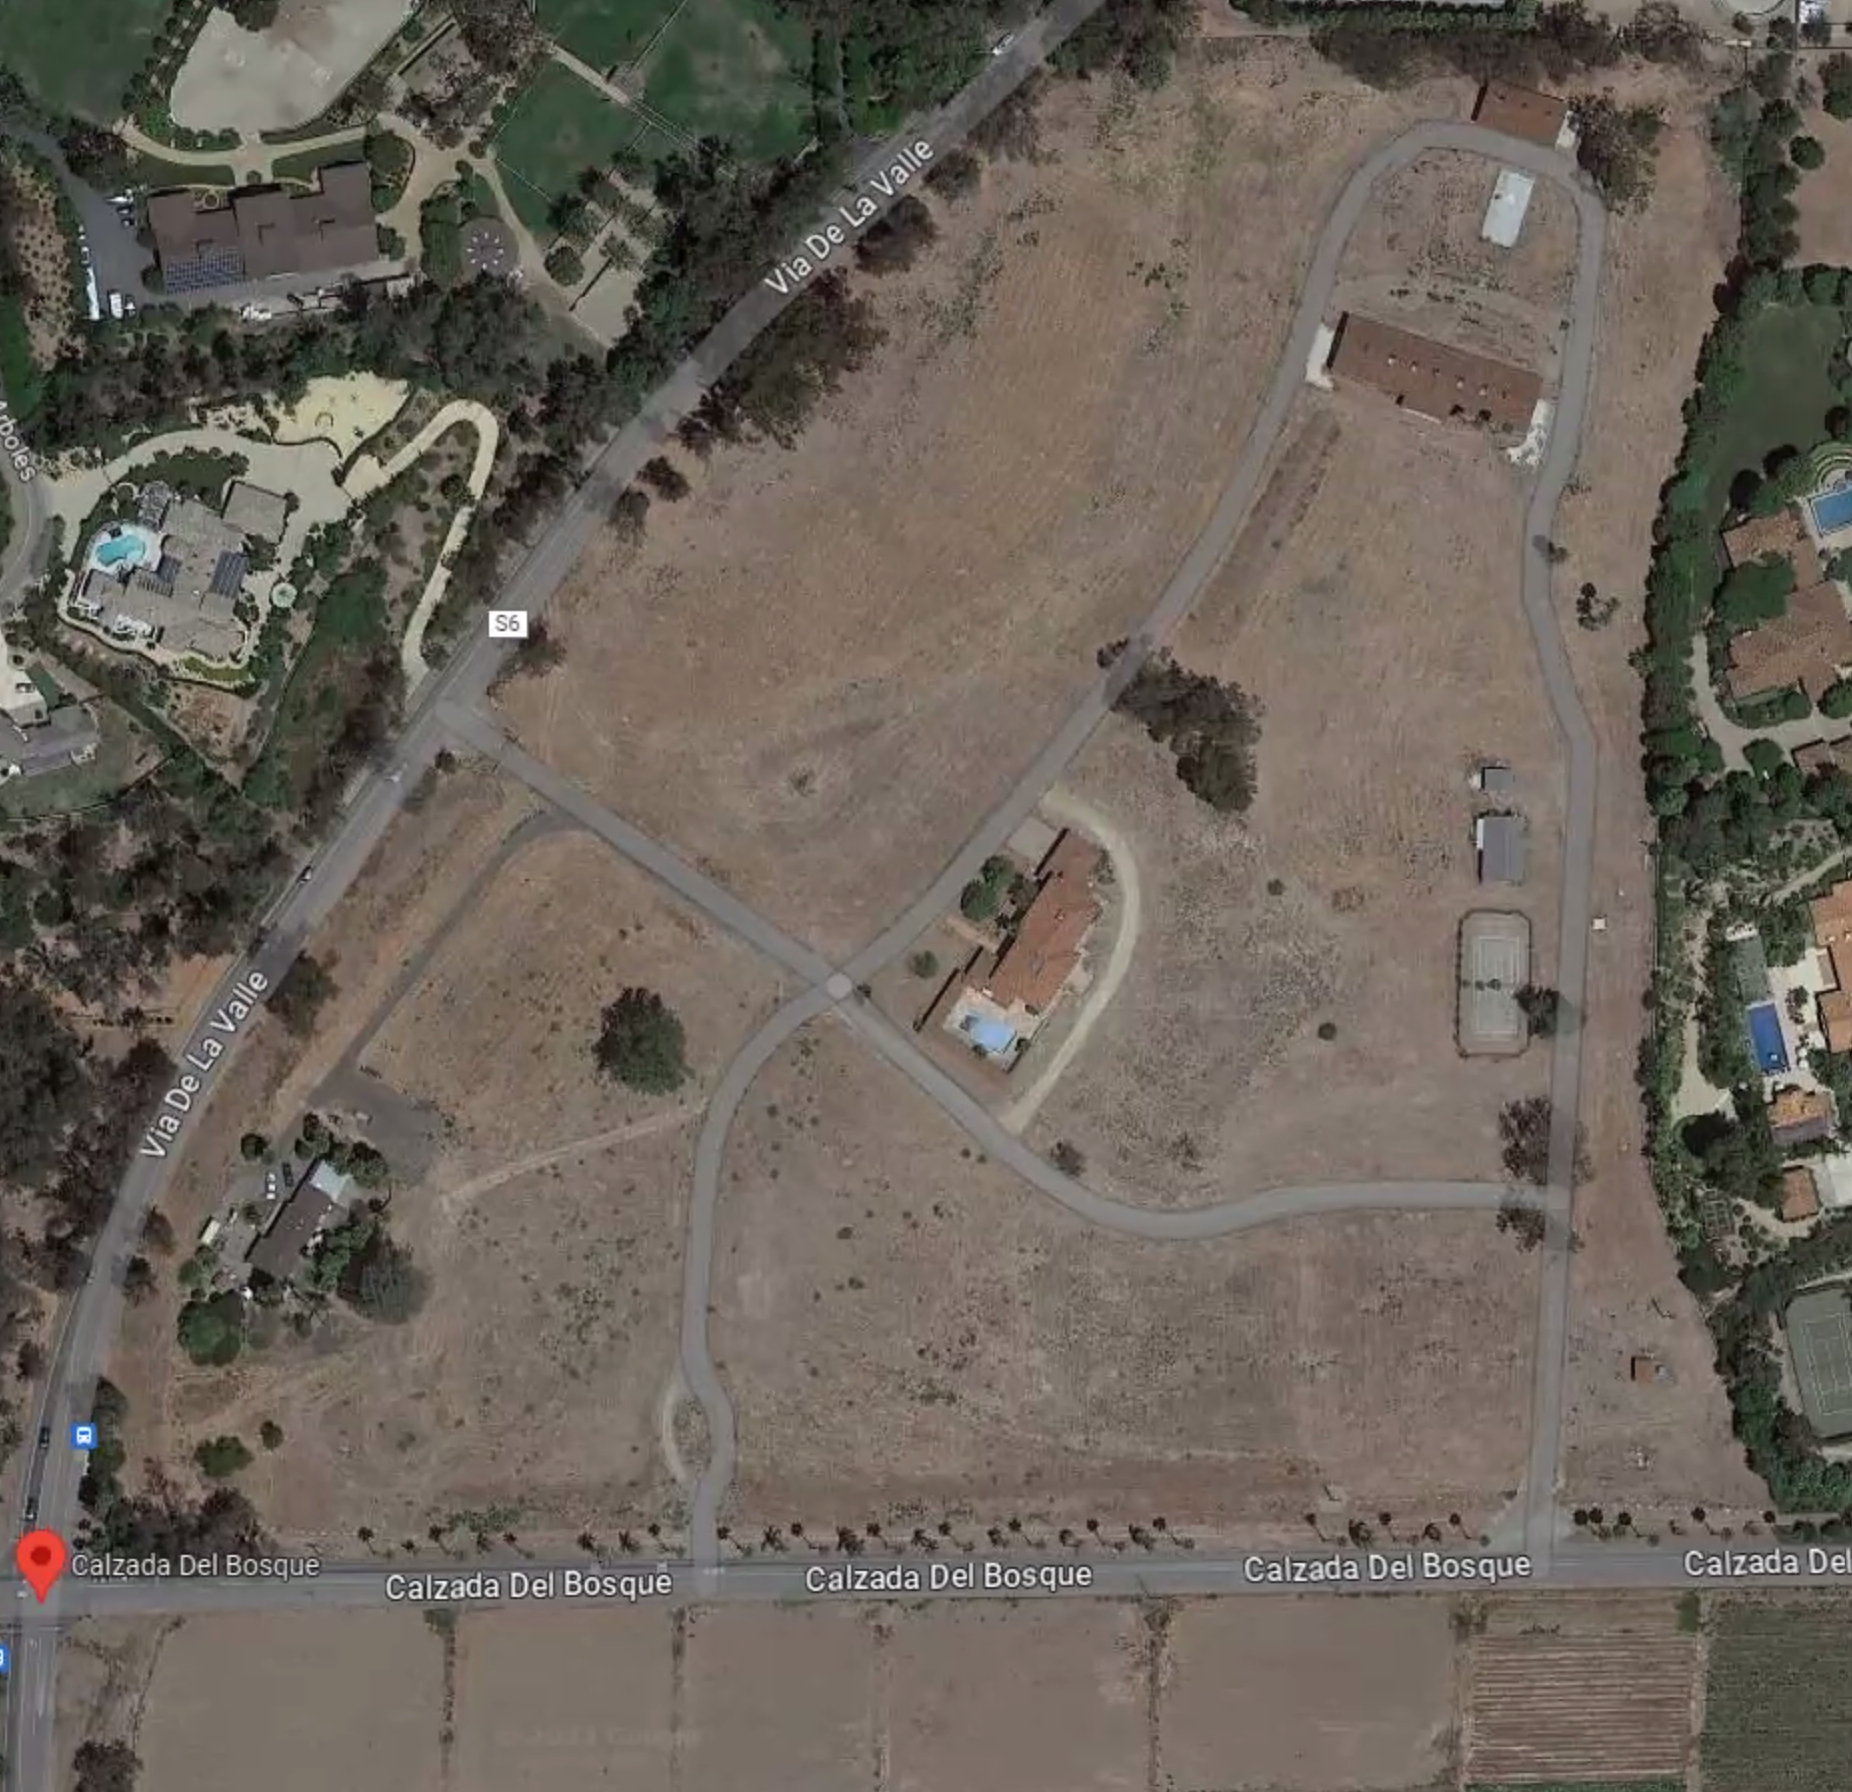 The plot of land for the proposed Silvergate Rancho Santa Fe development, located at the corner of Via De La Valle and Calzada Del Bosque